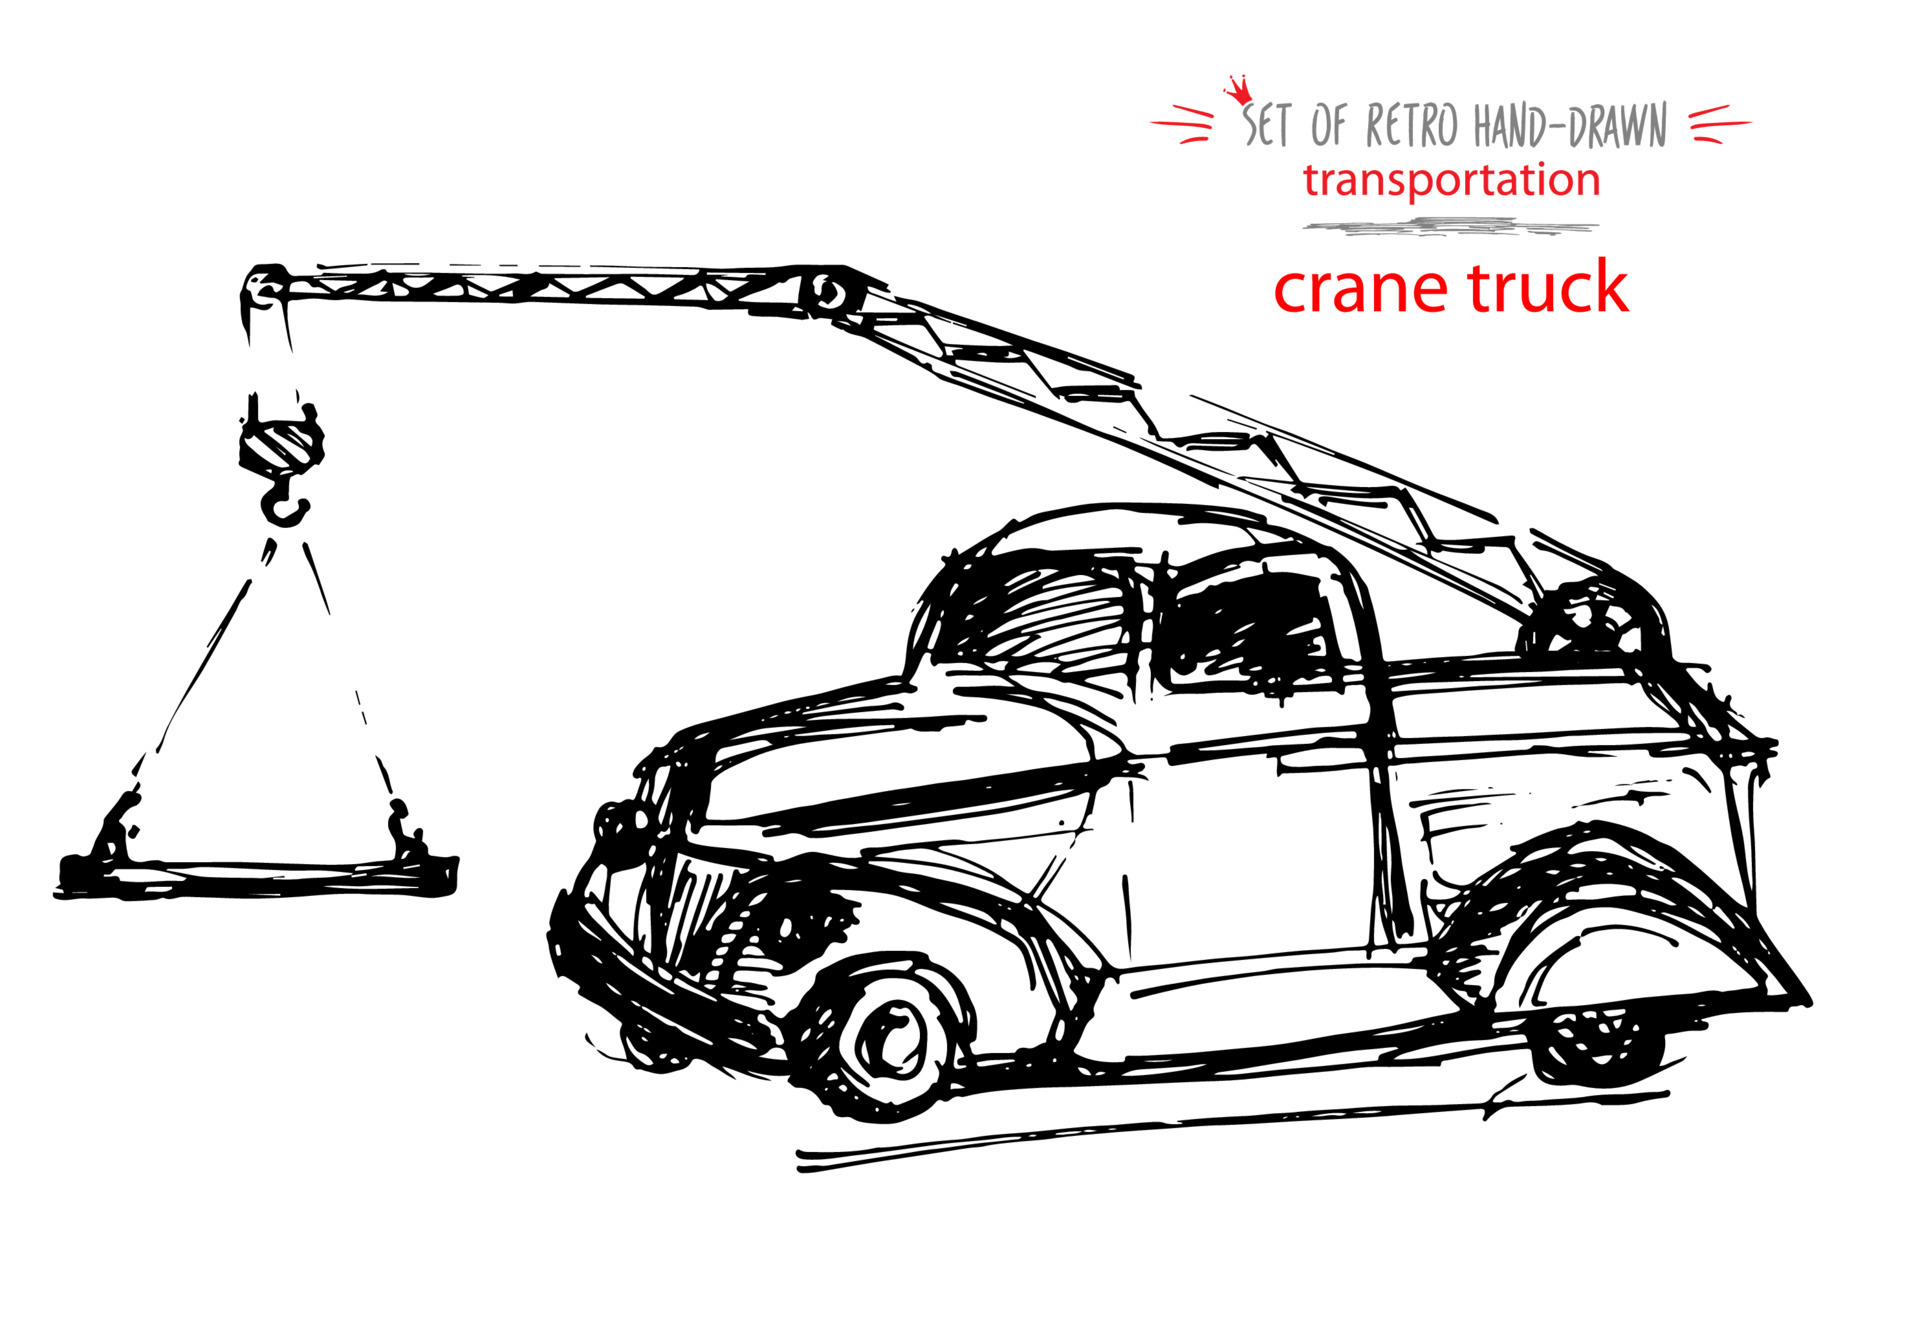 1661 Truck Crane Sketch Images Stock Photos  Vectors  Shutterstock